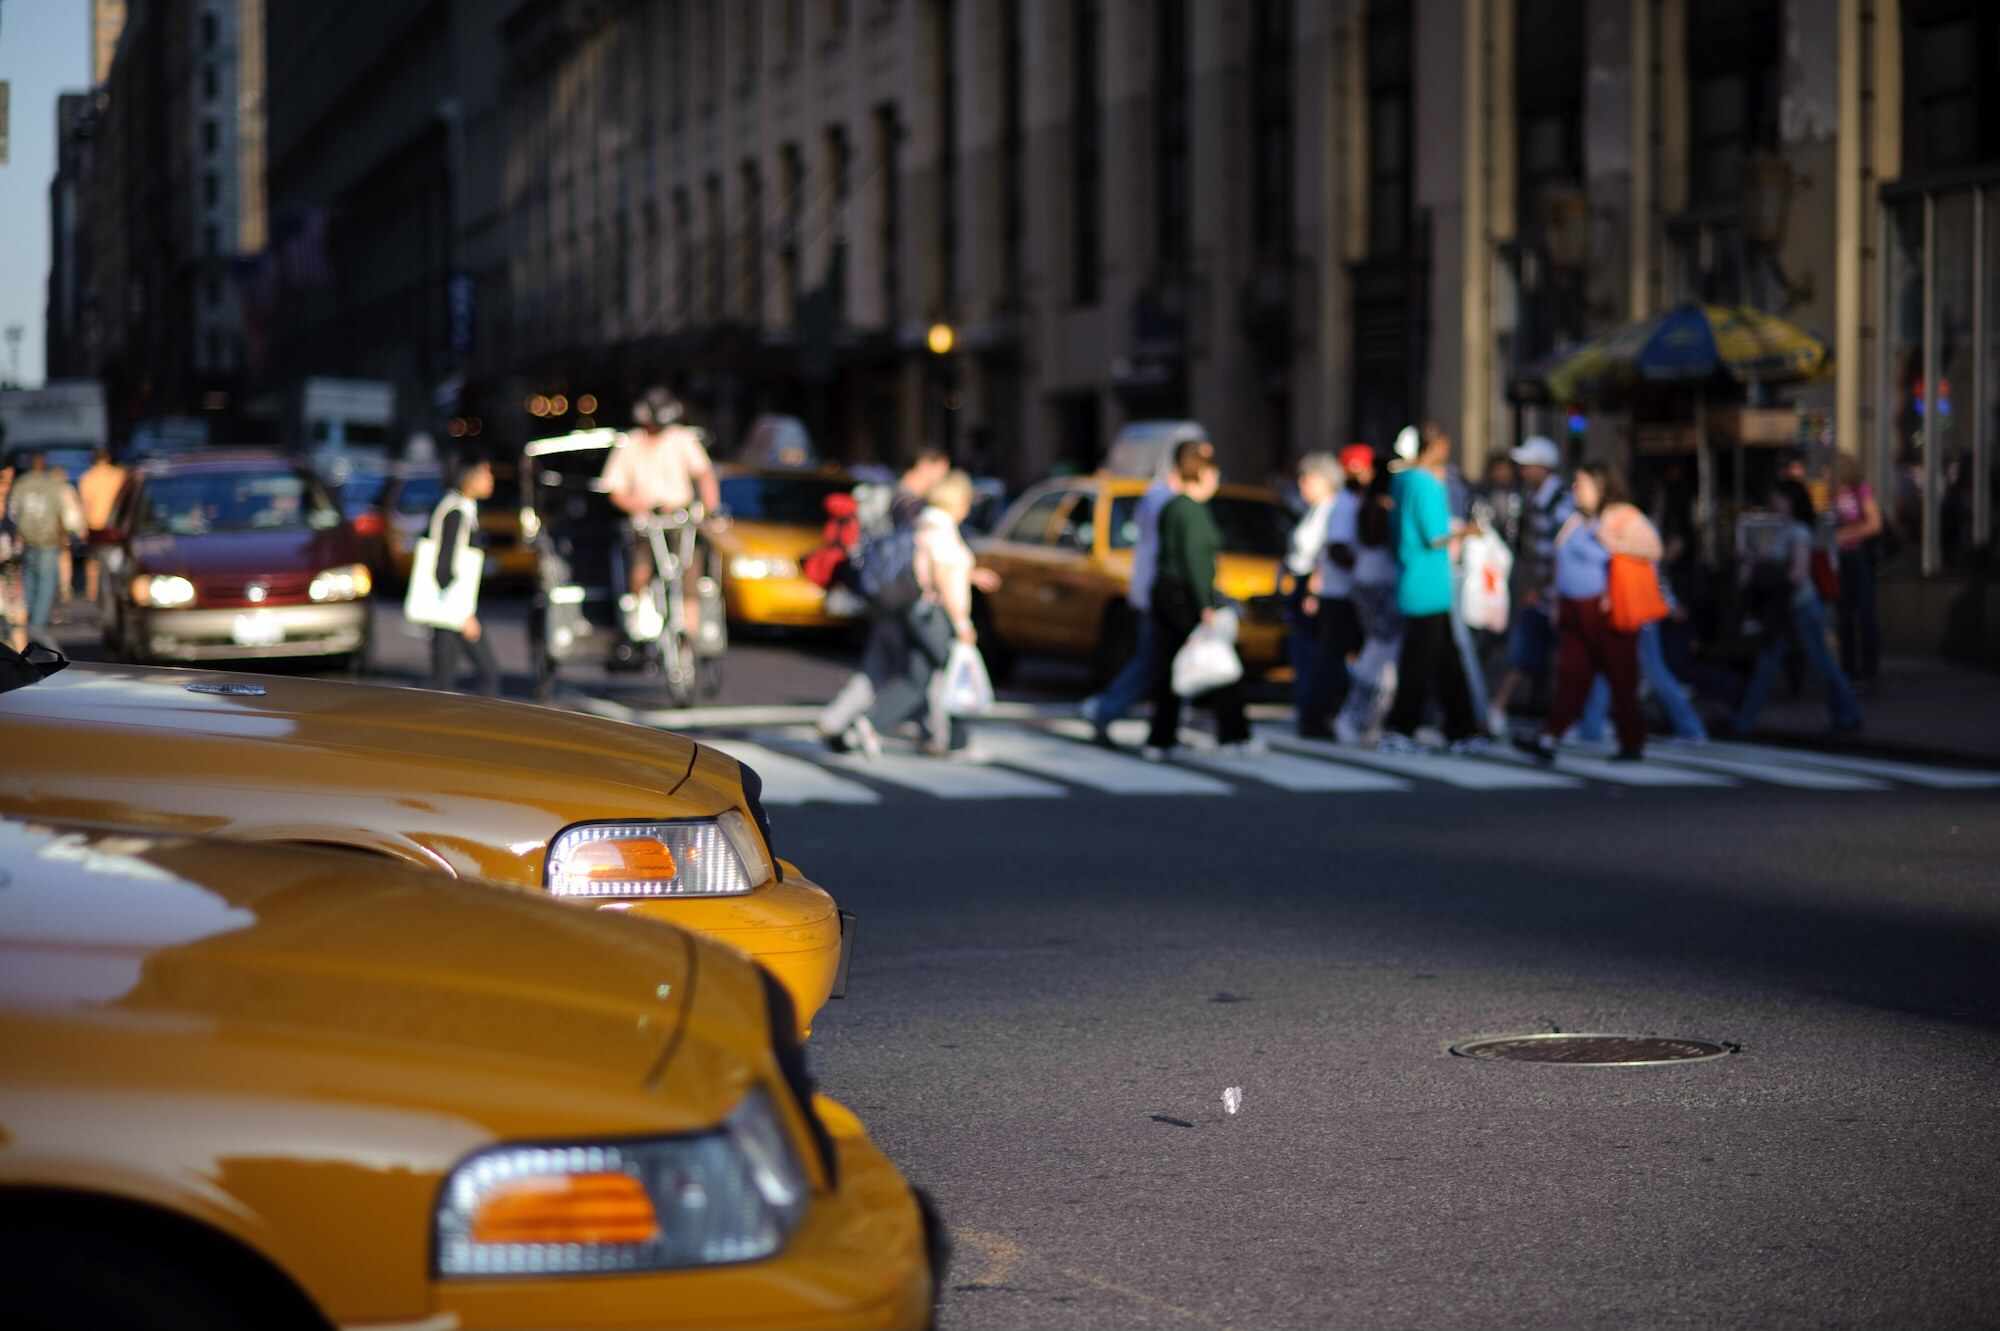 Dvojice taxíků čekajících na křižovatce, zatímco lidé v pozadí přecházejí ulici